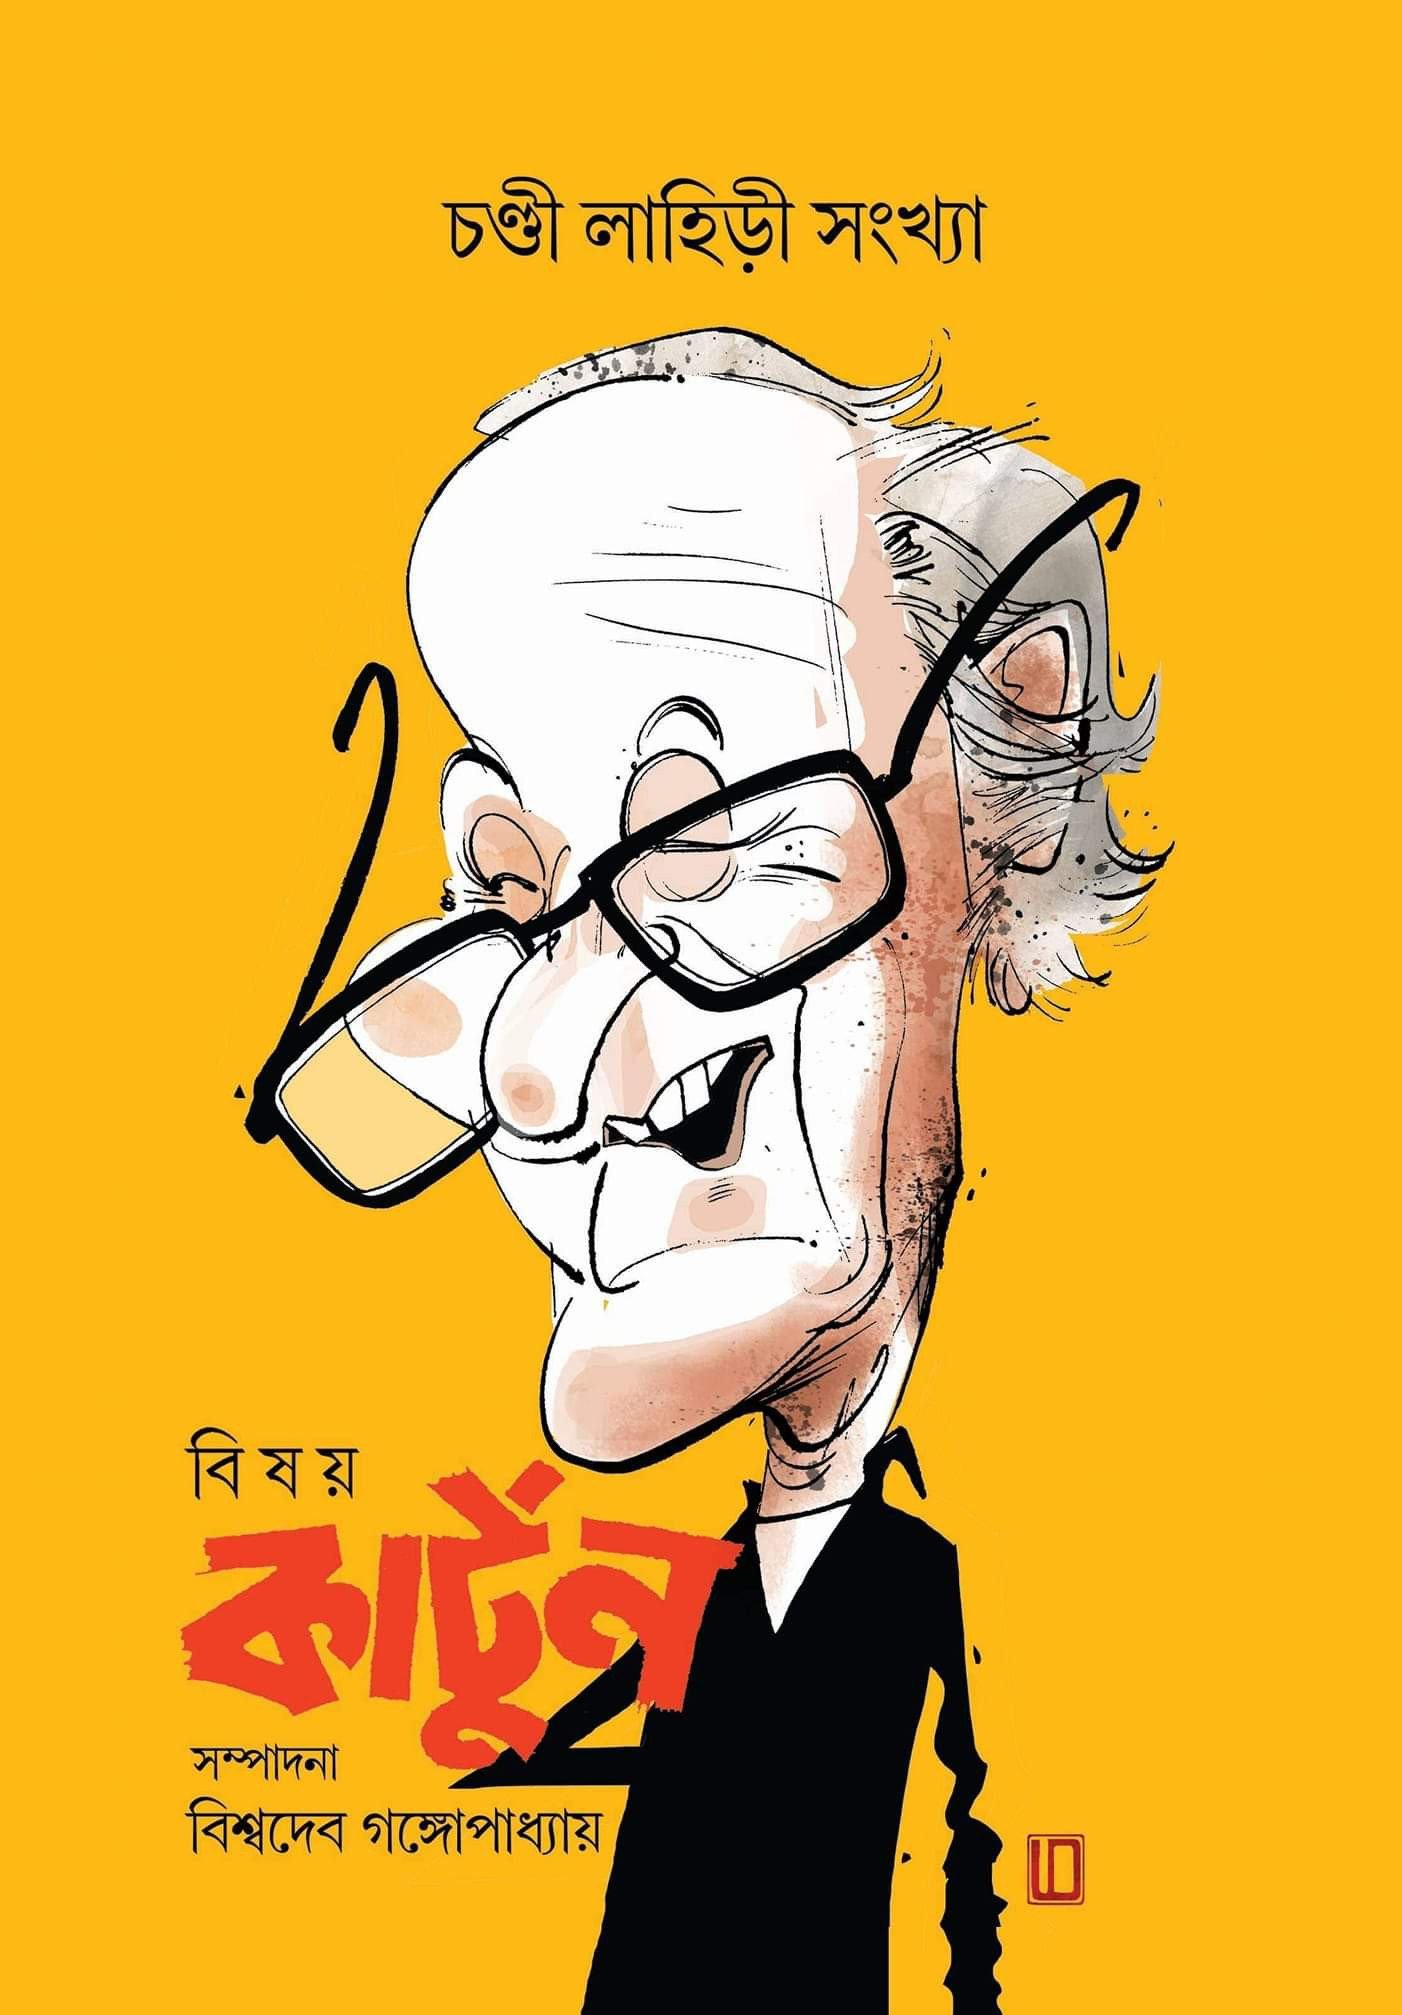 Bisay Cartoon – Chandi Lahiri Sangkha – BoiChitro India